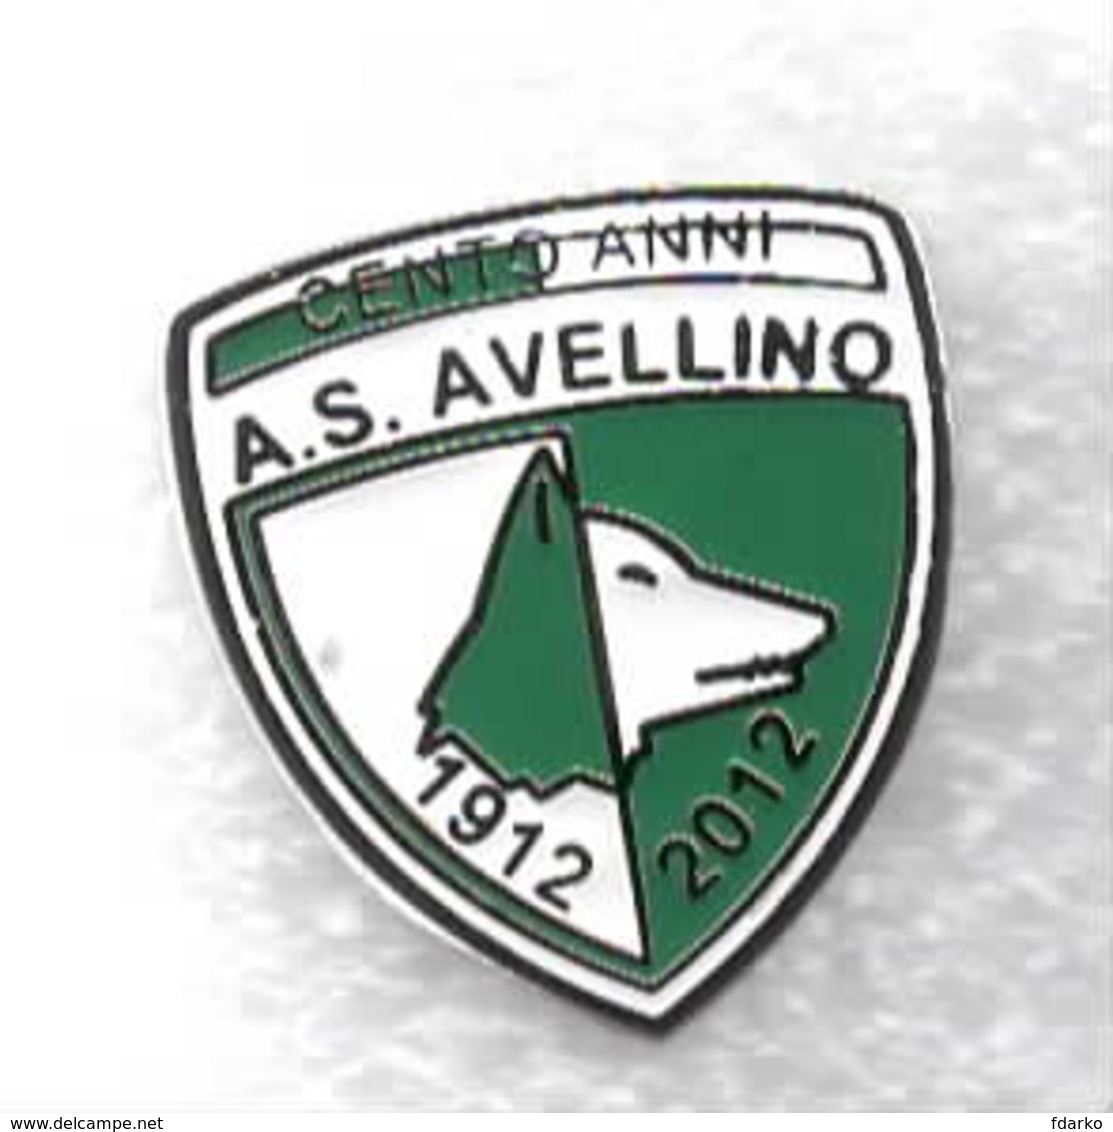 100 Anni AS Avellino Calcio Distintivi FootBall Soccer Spilla Pins Italy - Calcio